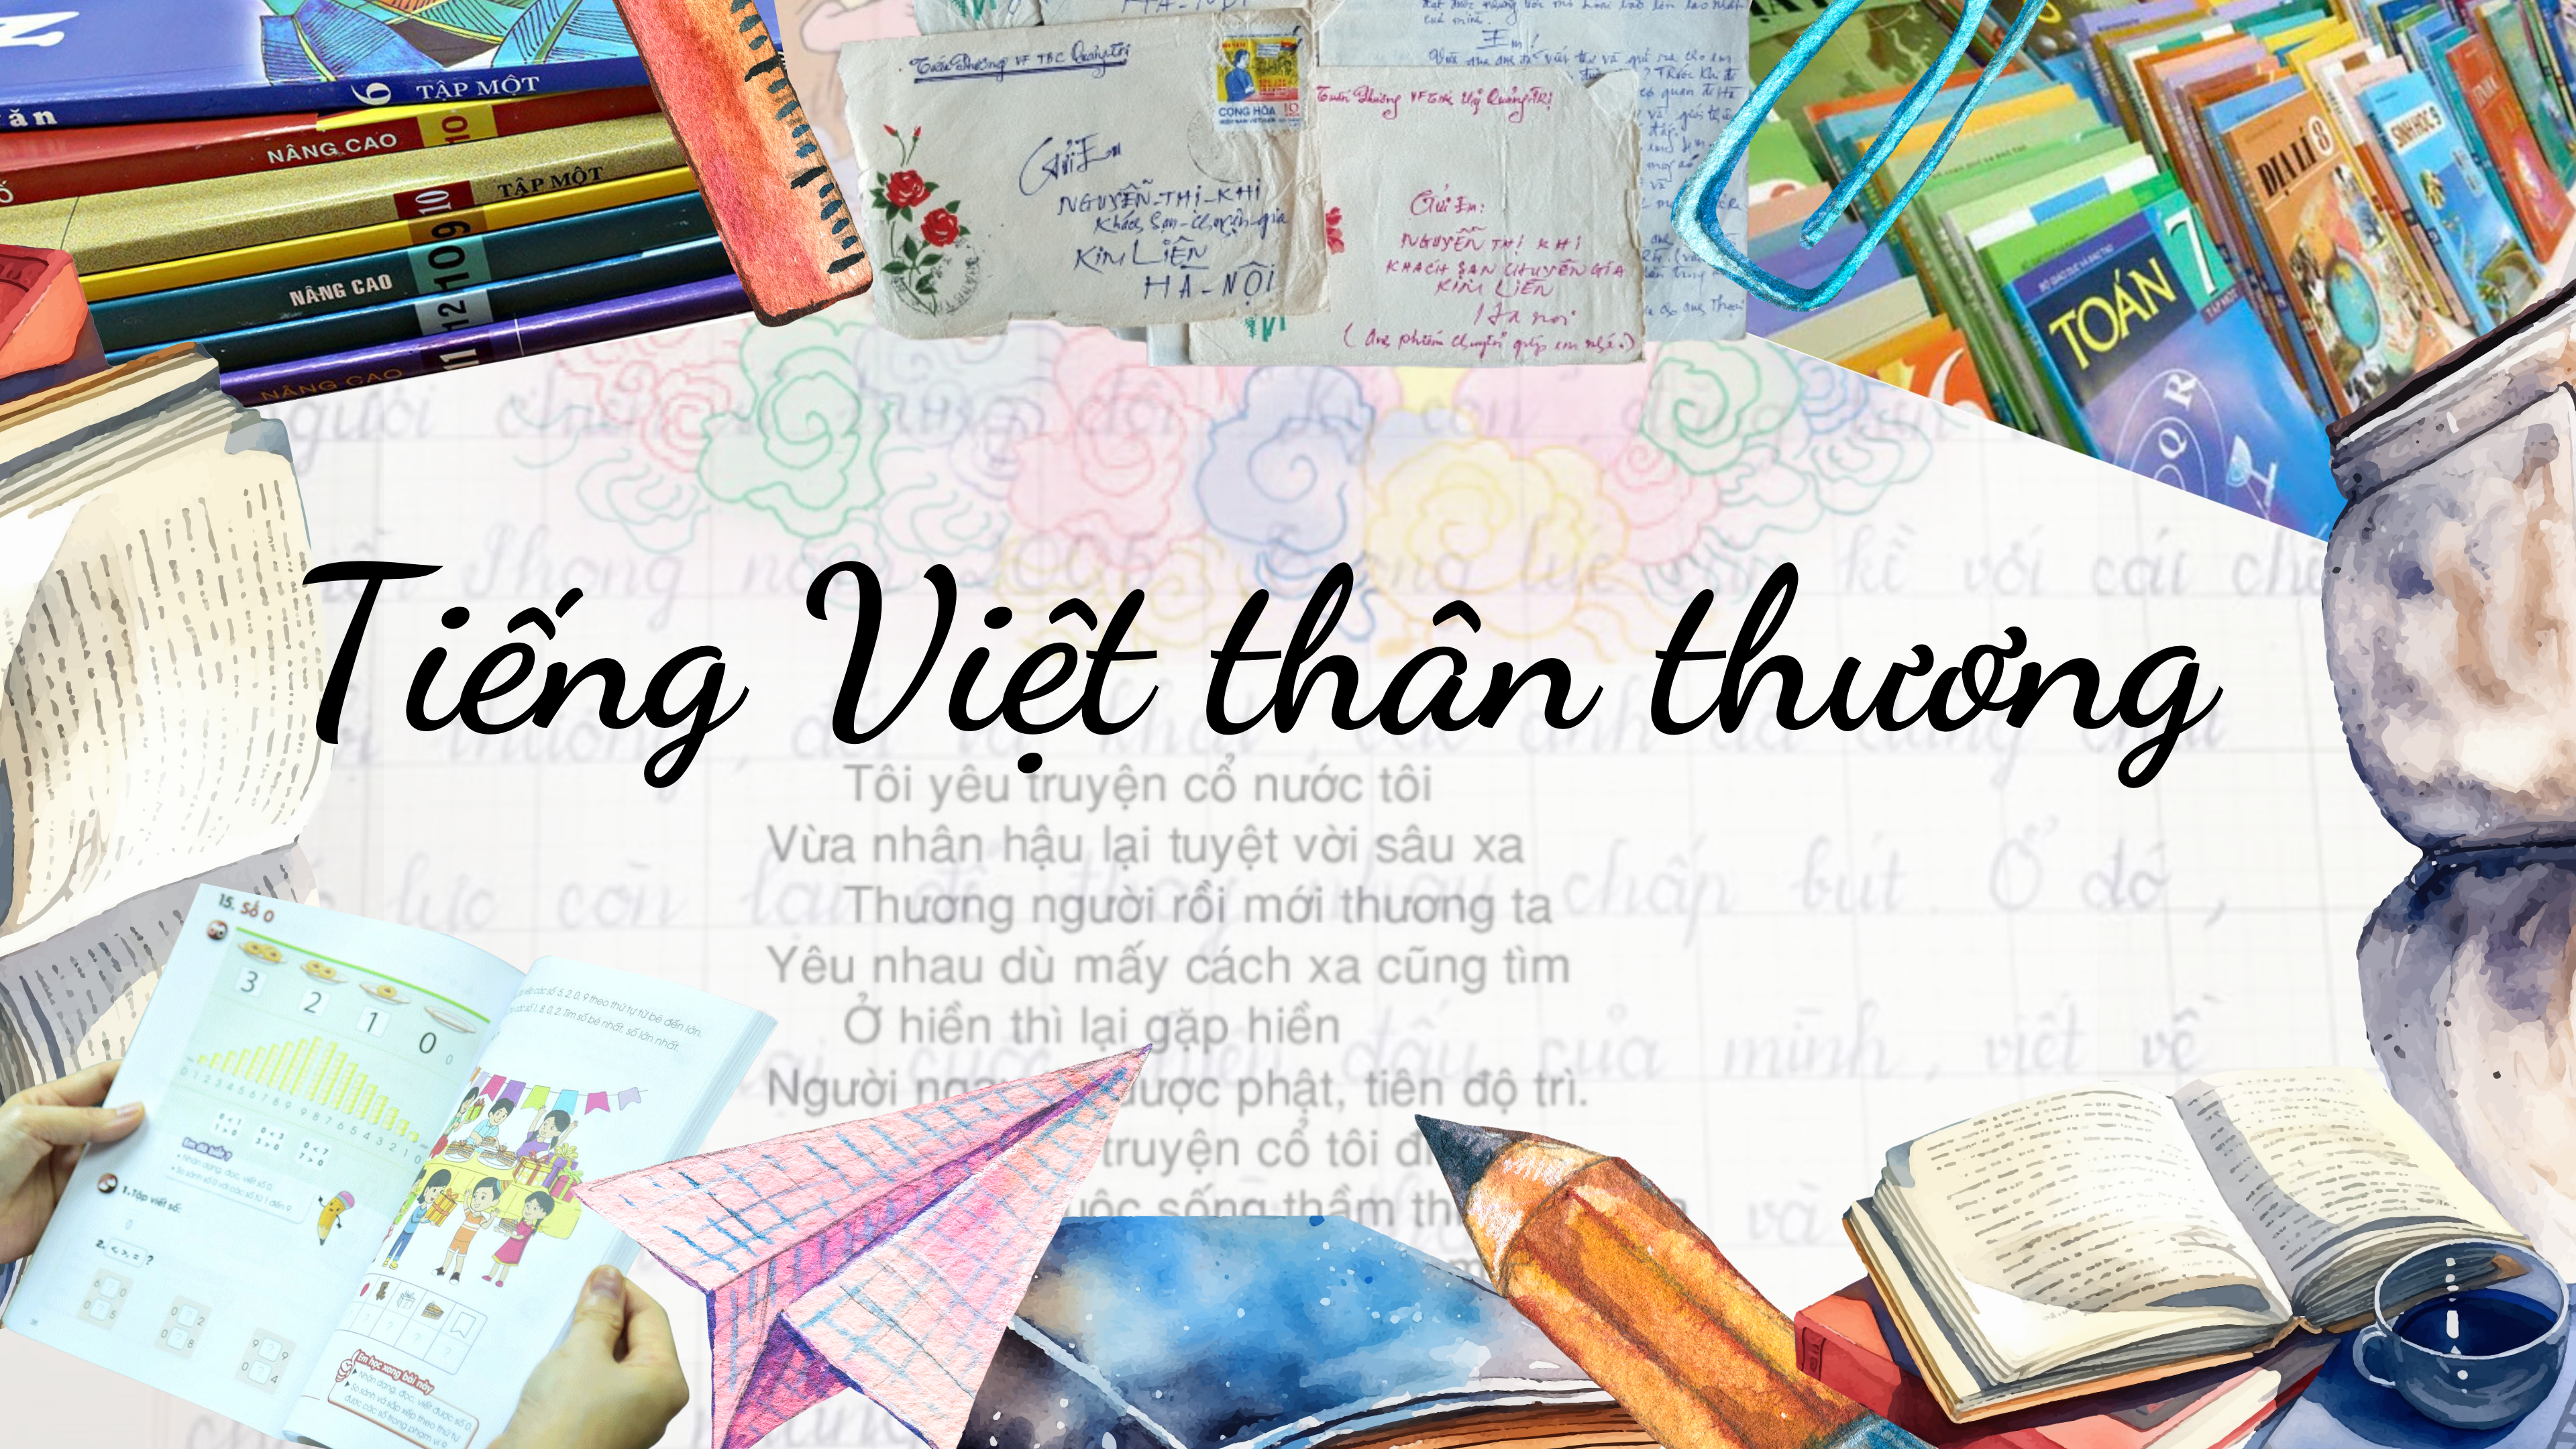 [Megastory] Tiếng Việt thân thương